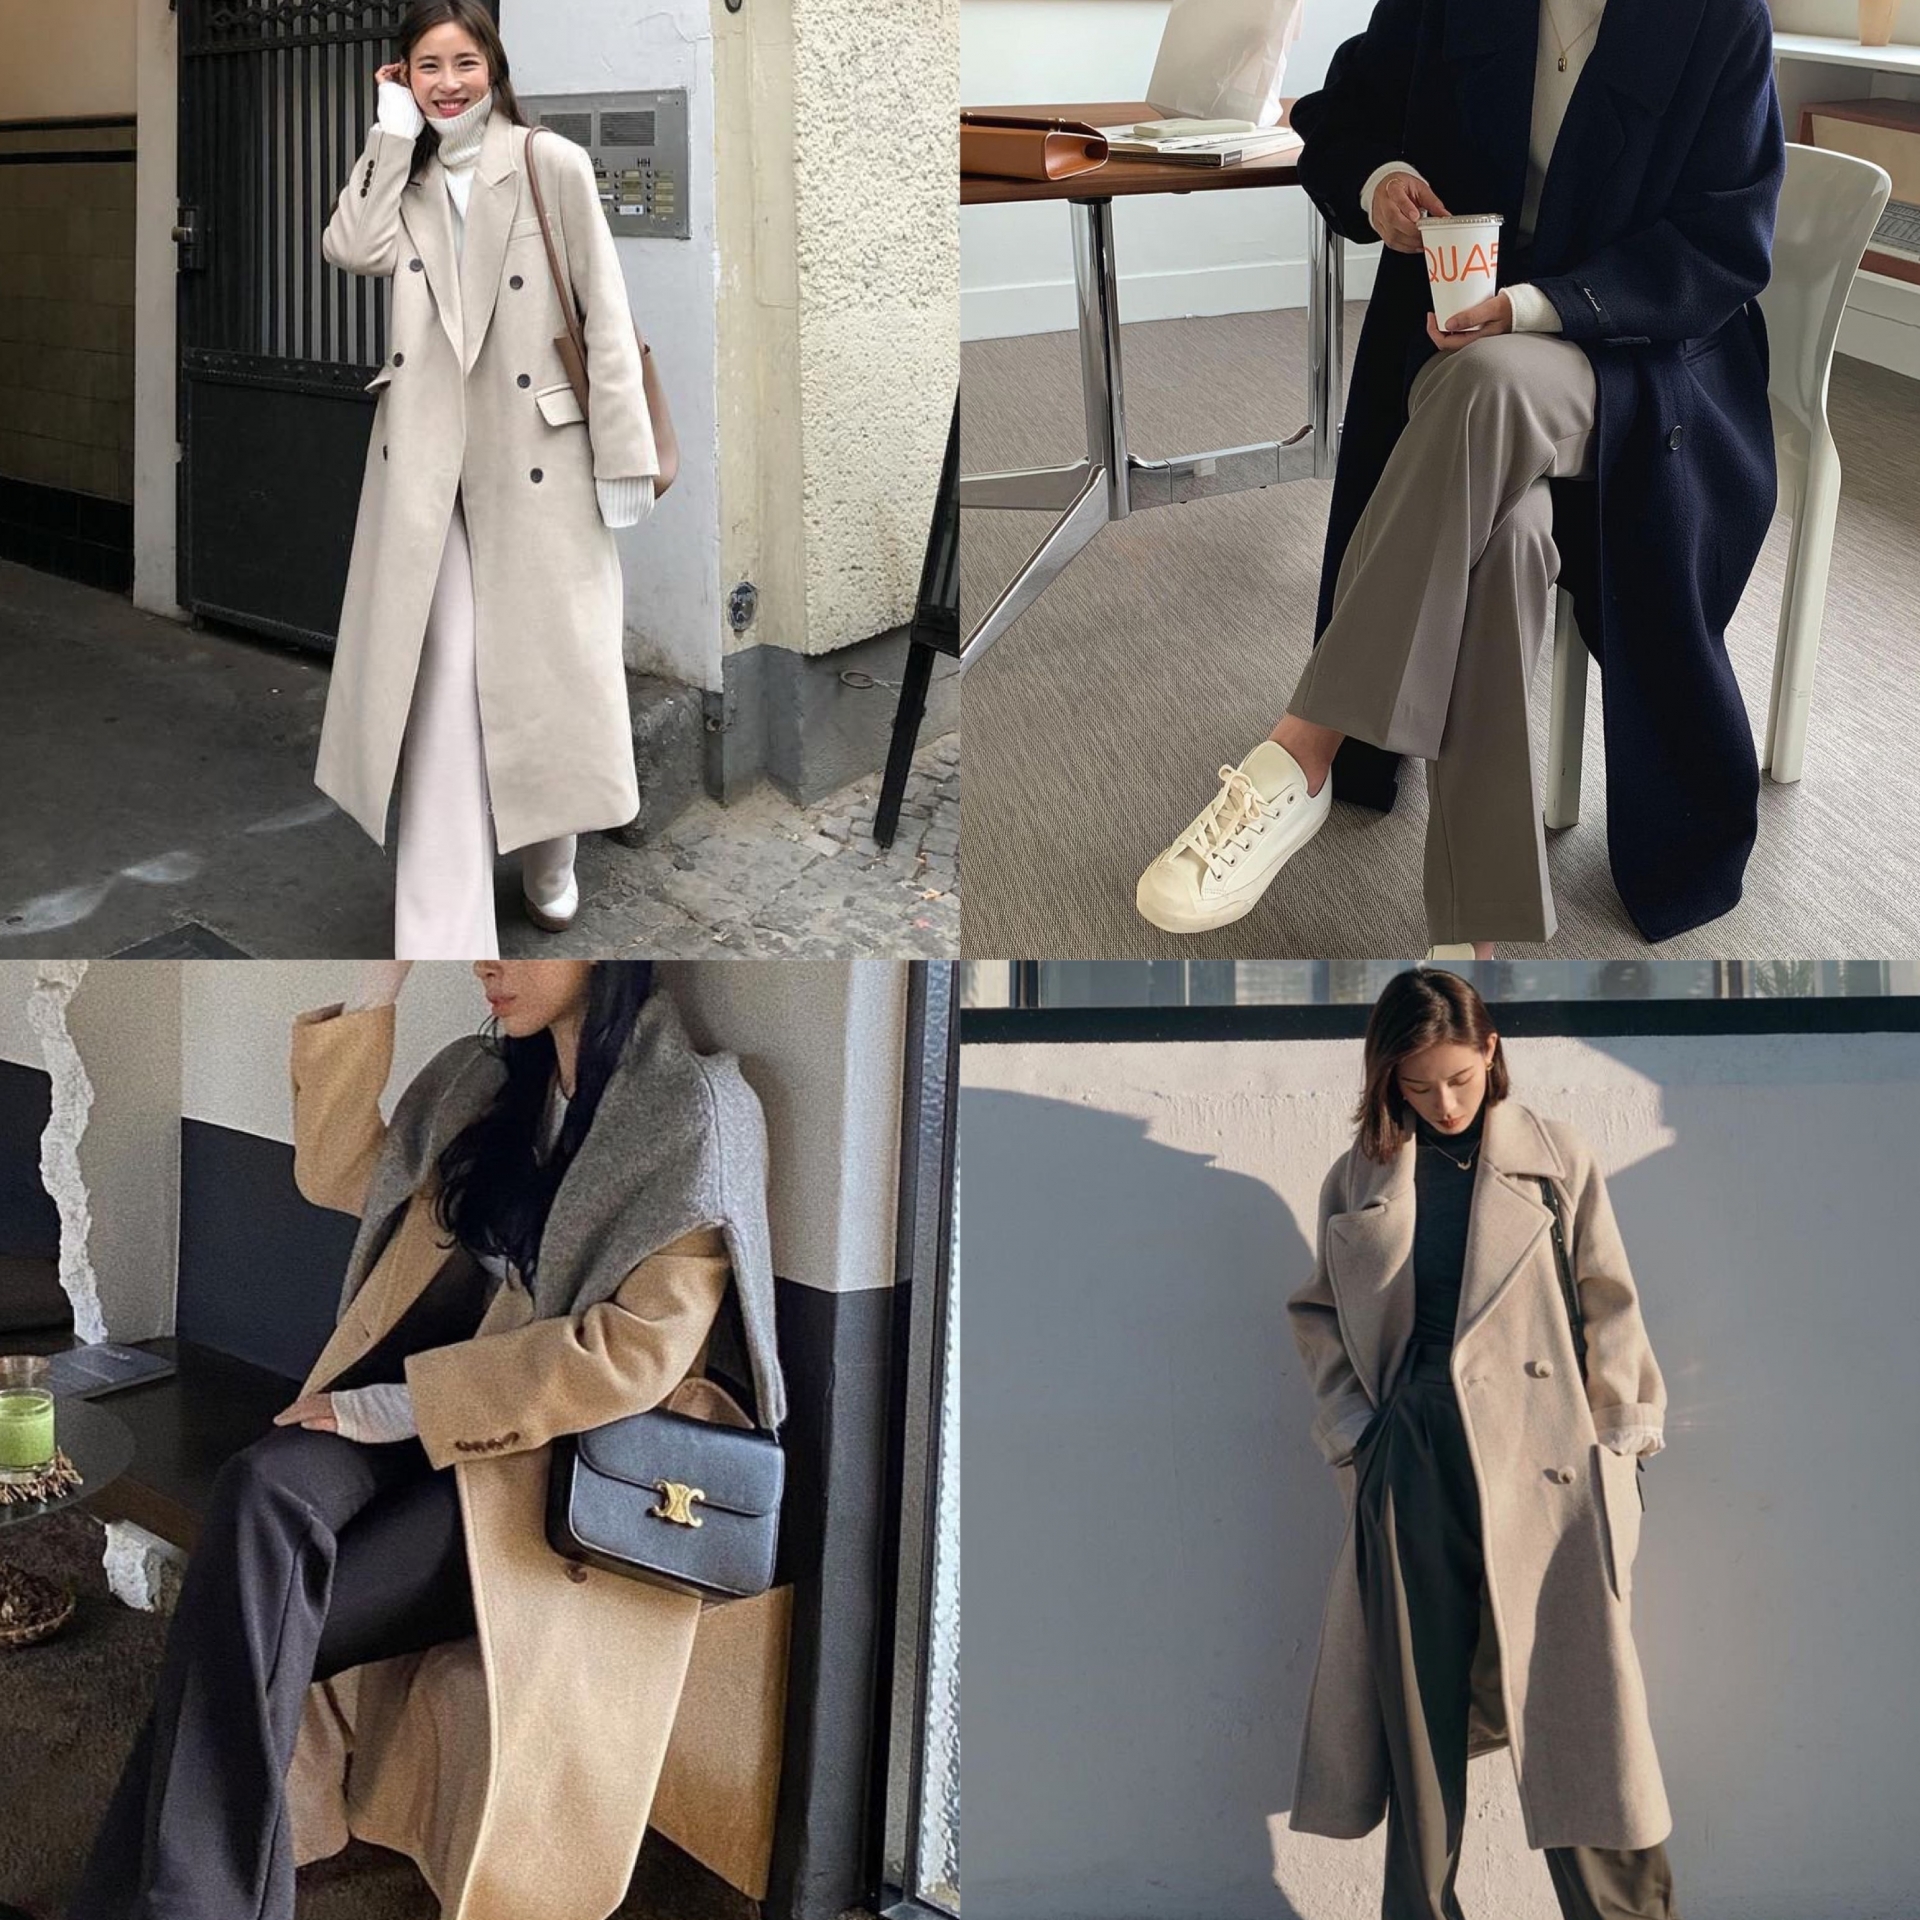 Áo khoác dạ và quần ống suông cực kì phù hợp cho các cô nàng U30, vừa đảm bảo lịch sự, thanh lịch mà vẫn rất ấm áp trong mùa đông.